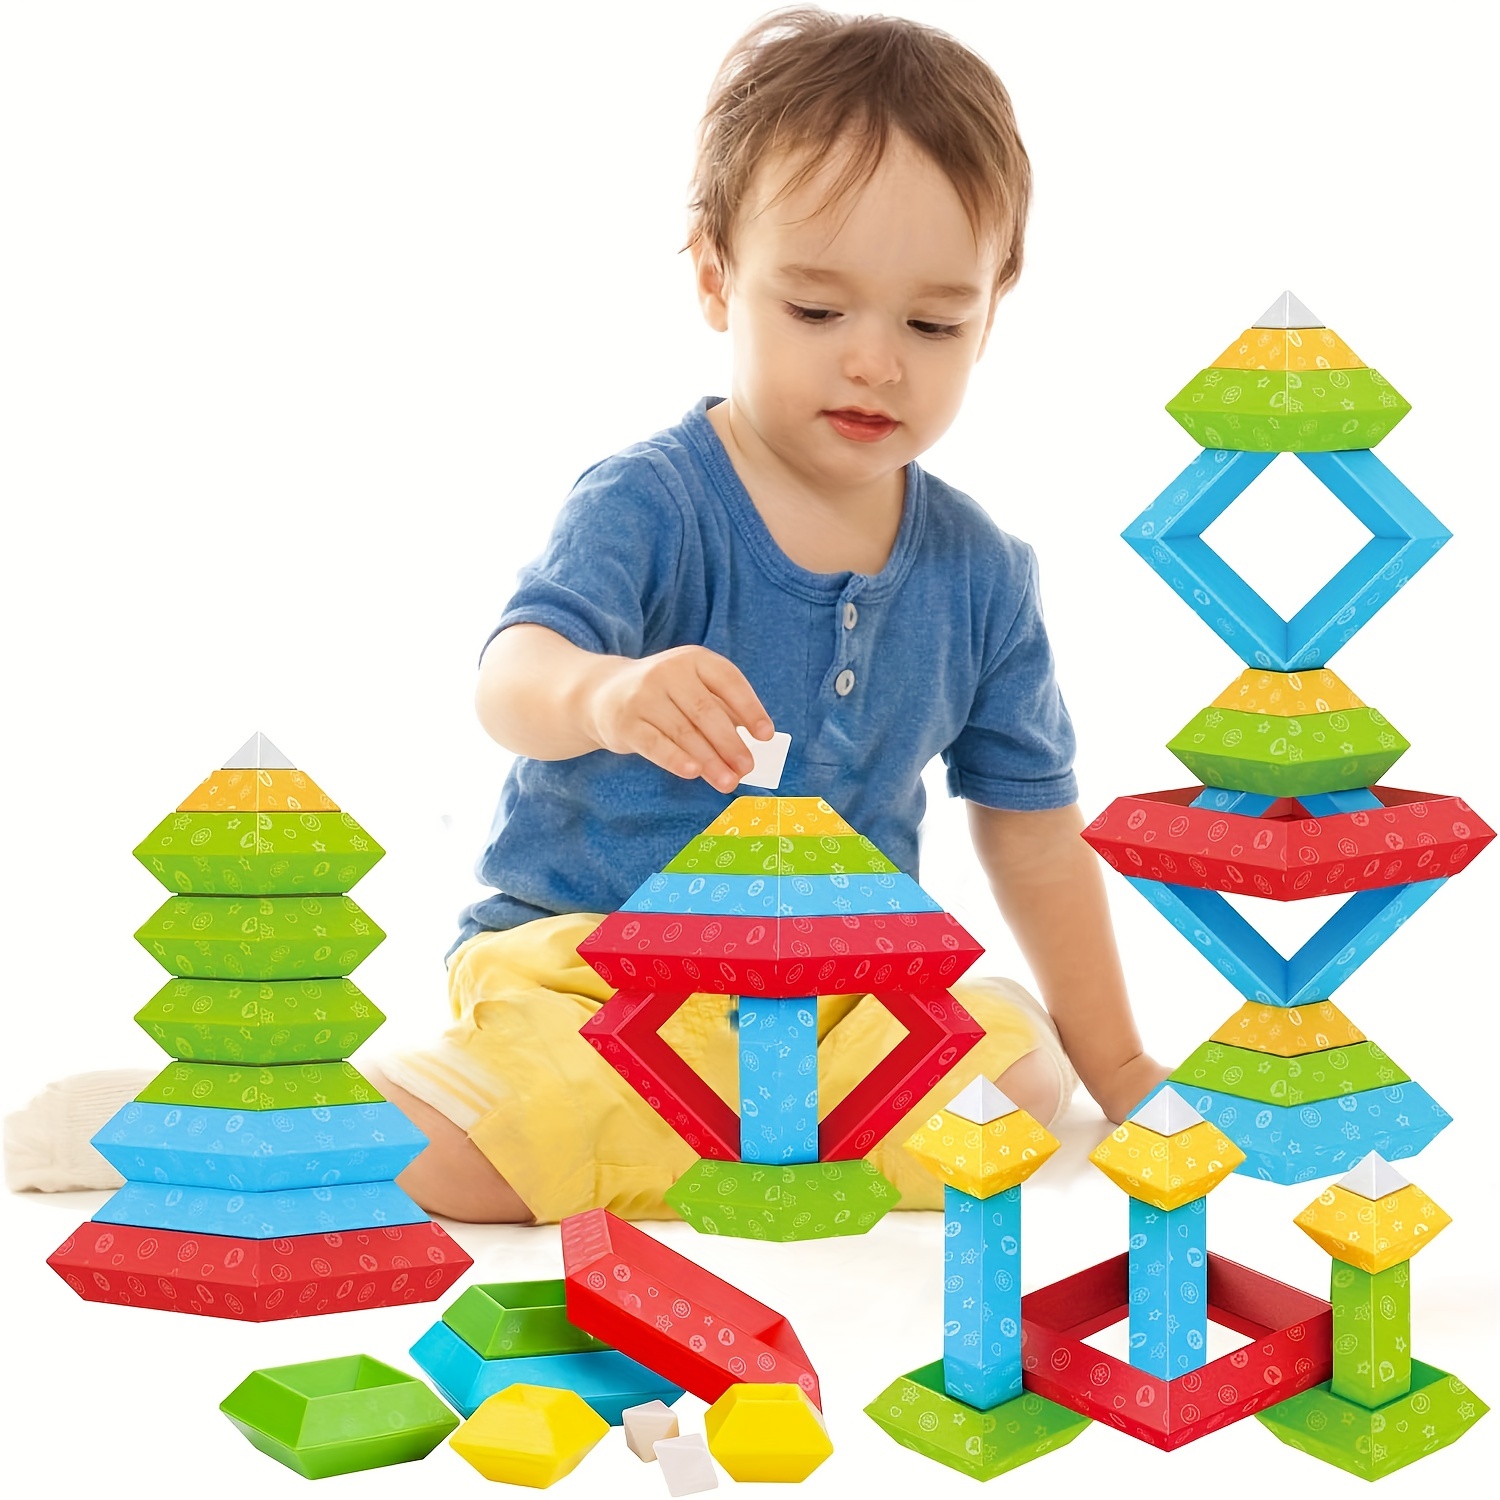 Juguetes Montessori para niños de 3, 4 y 5 años, constructor de caminos  lógicos de 4 niveles y más de 118 desafíos de desarrollo de habilidades